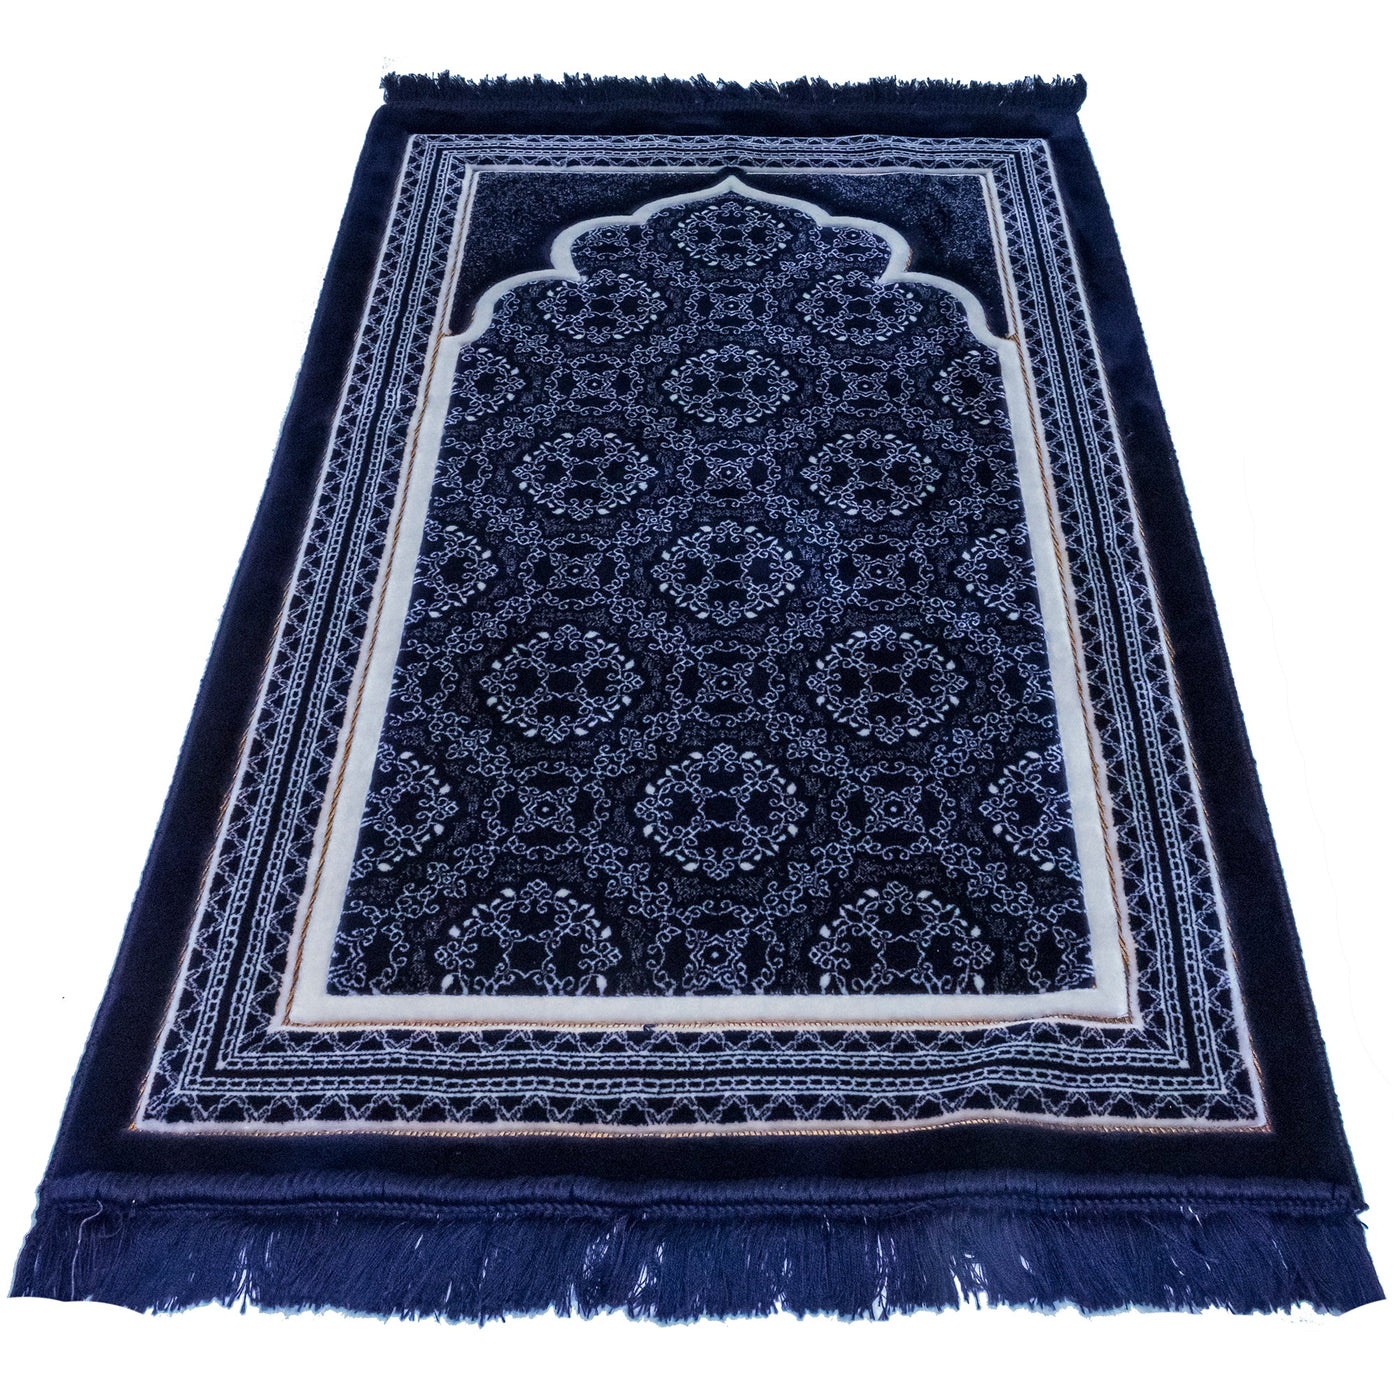 Modefa Prayer Rug Dark Blue Lux Plush Velvet Islamic Prayer Rug - Elegant Swirl Dark Blue